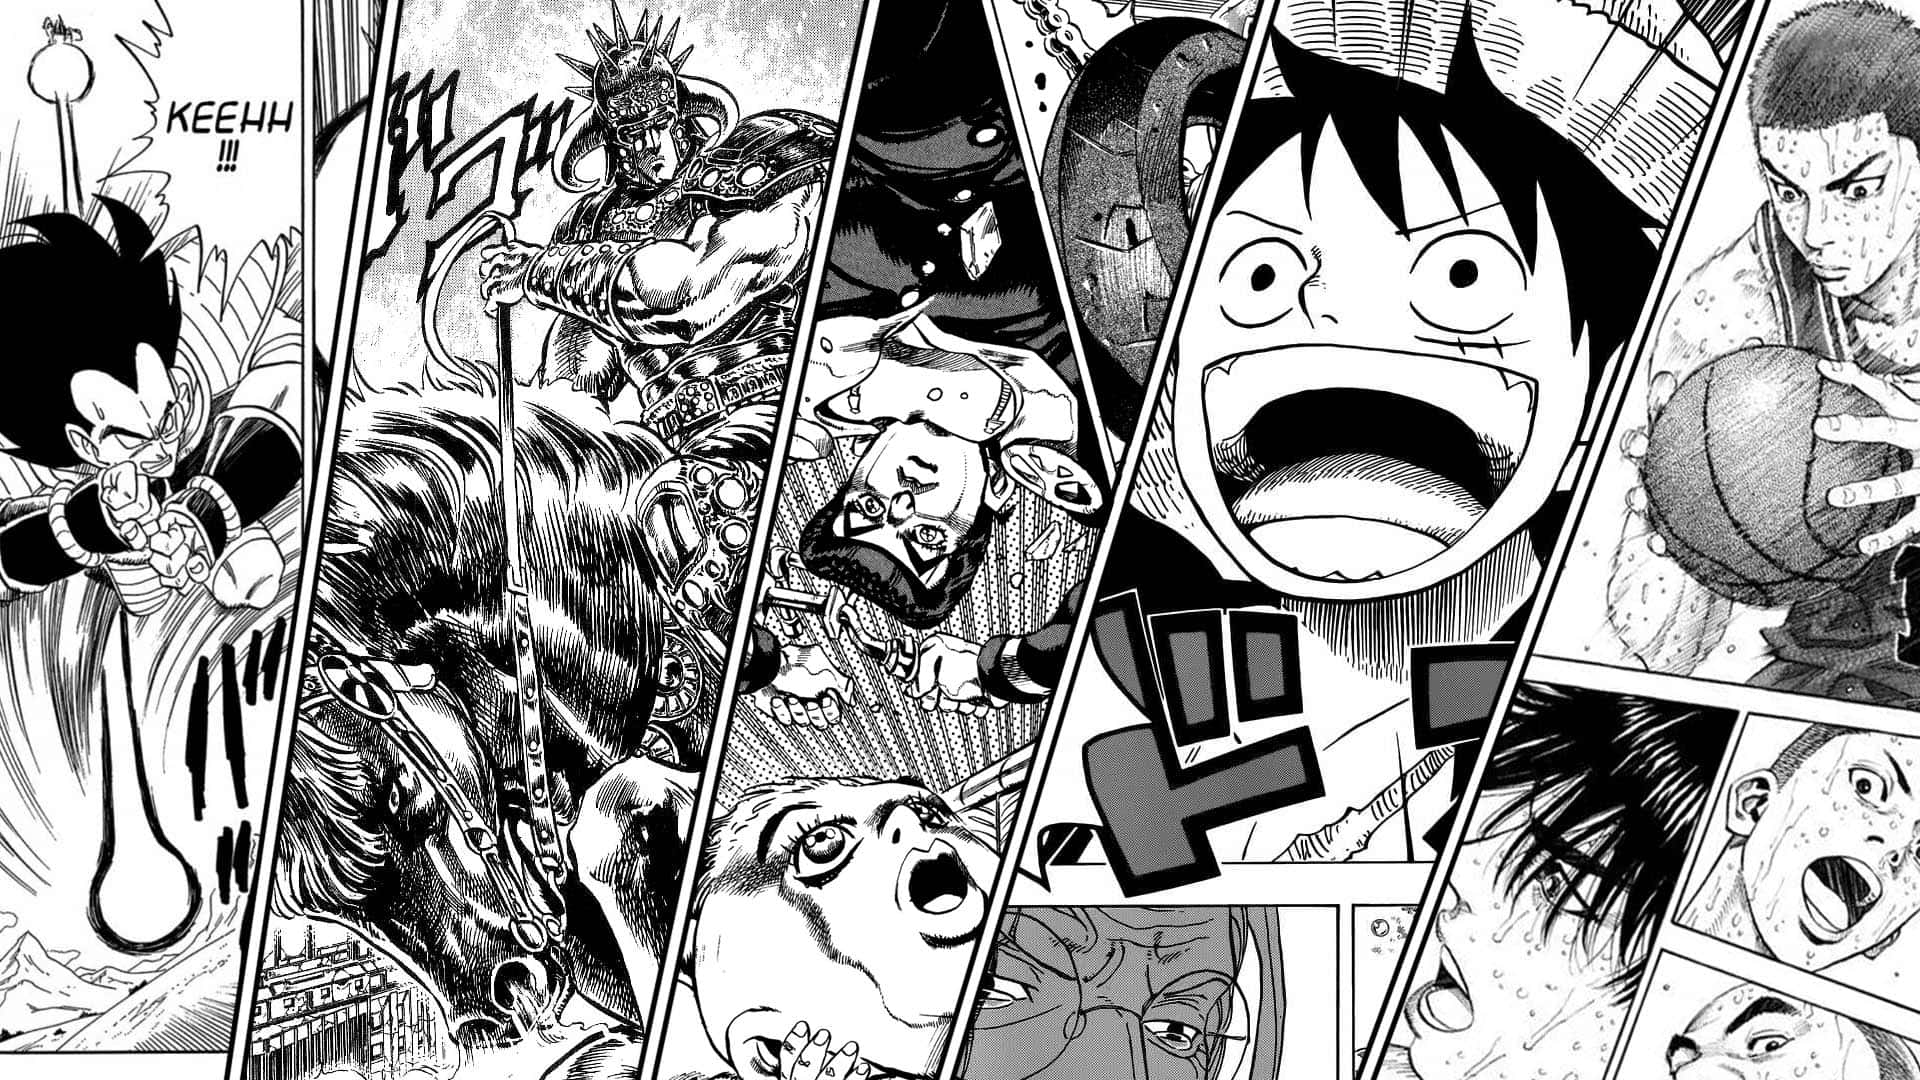 Mangakunststil Panel Scene